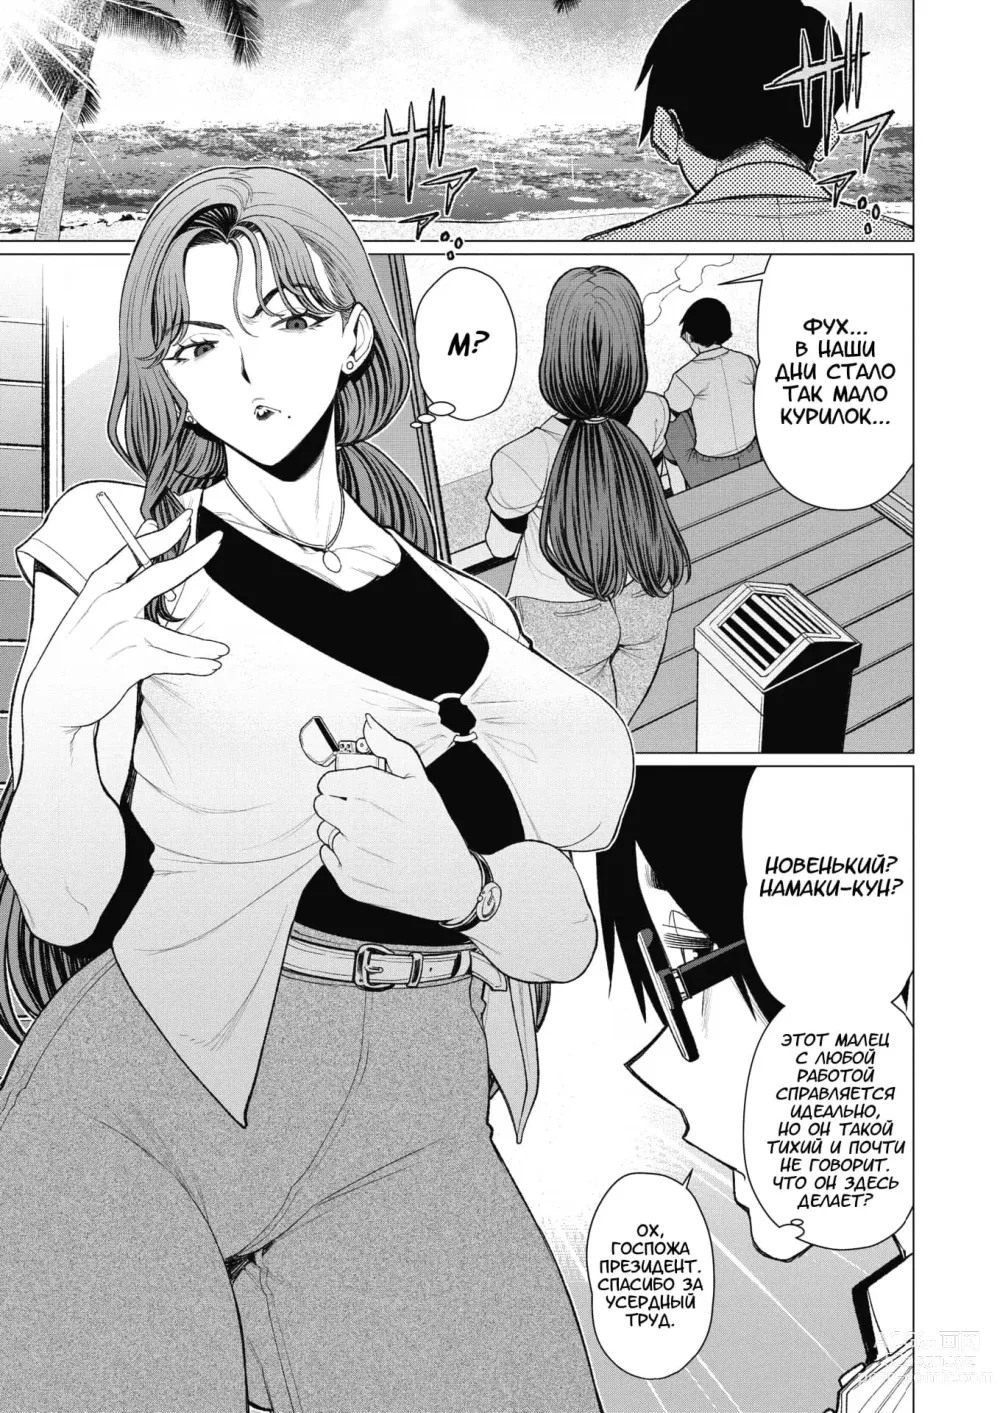 Page 3 of manga Госпожа Президент хочет, чтобы её заметили